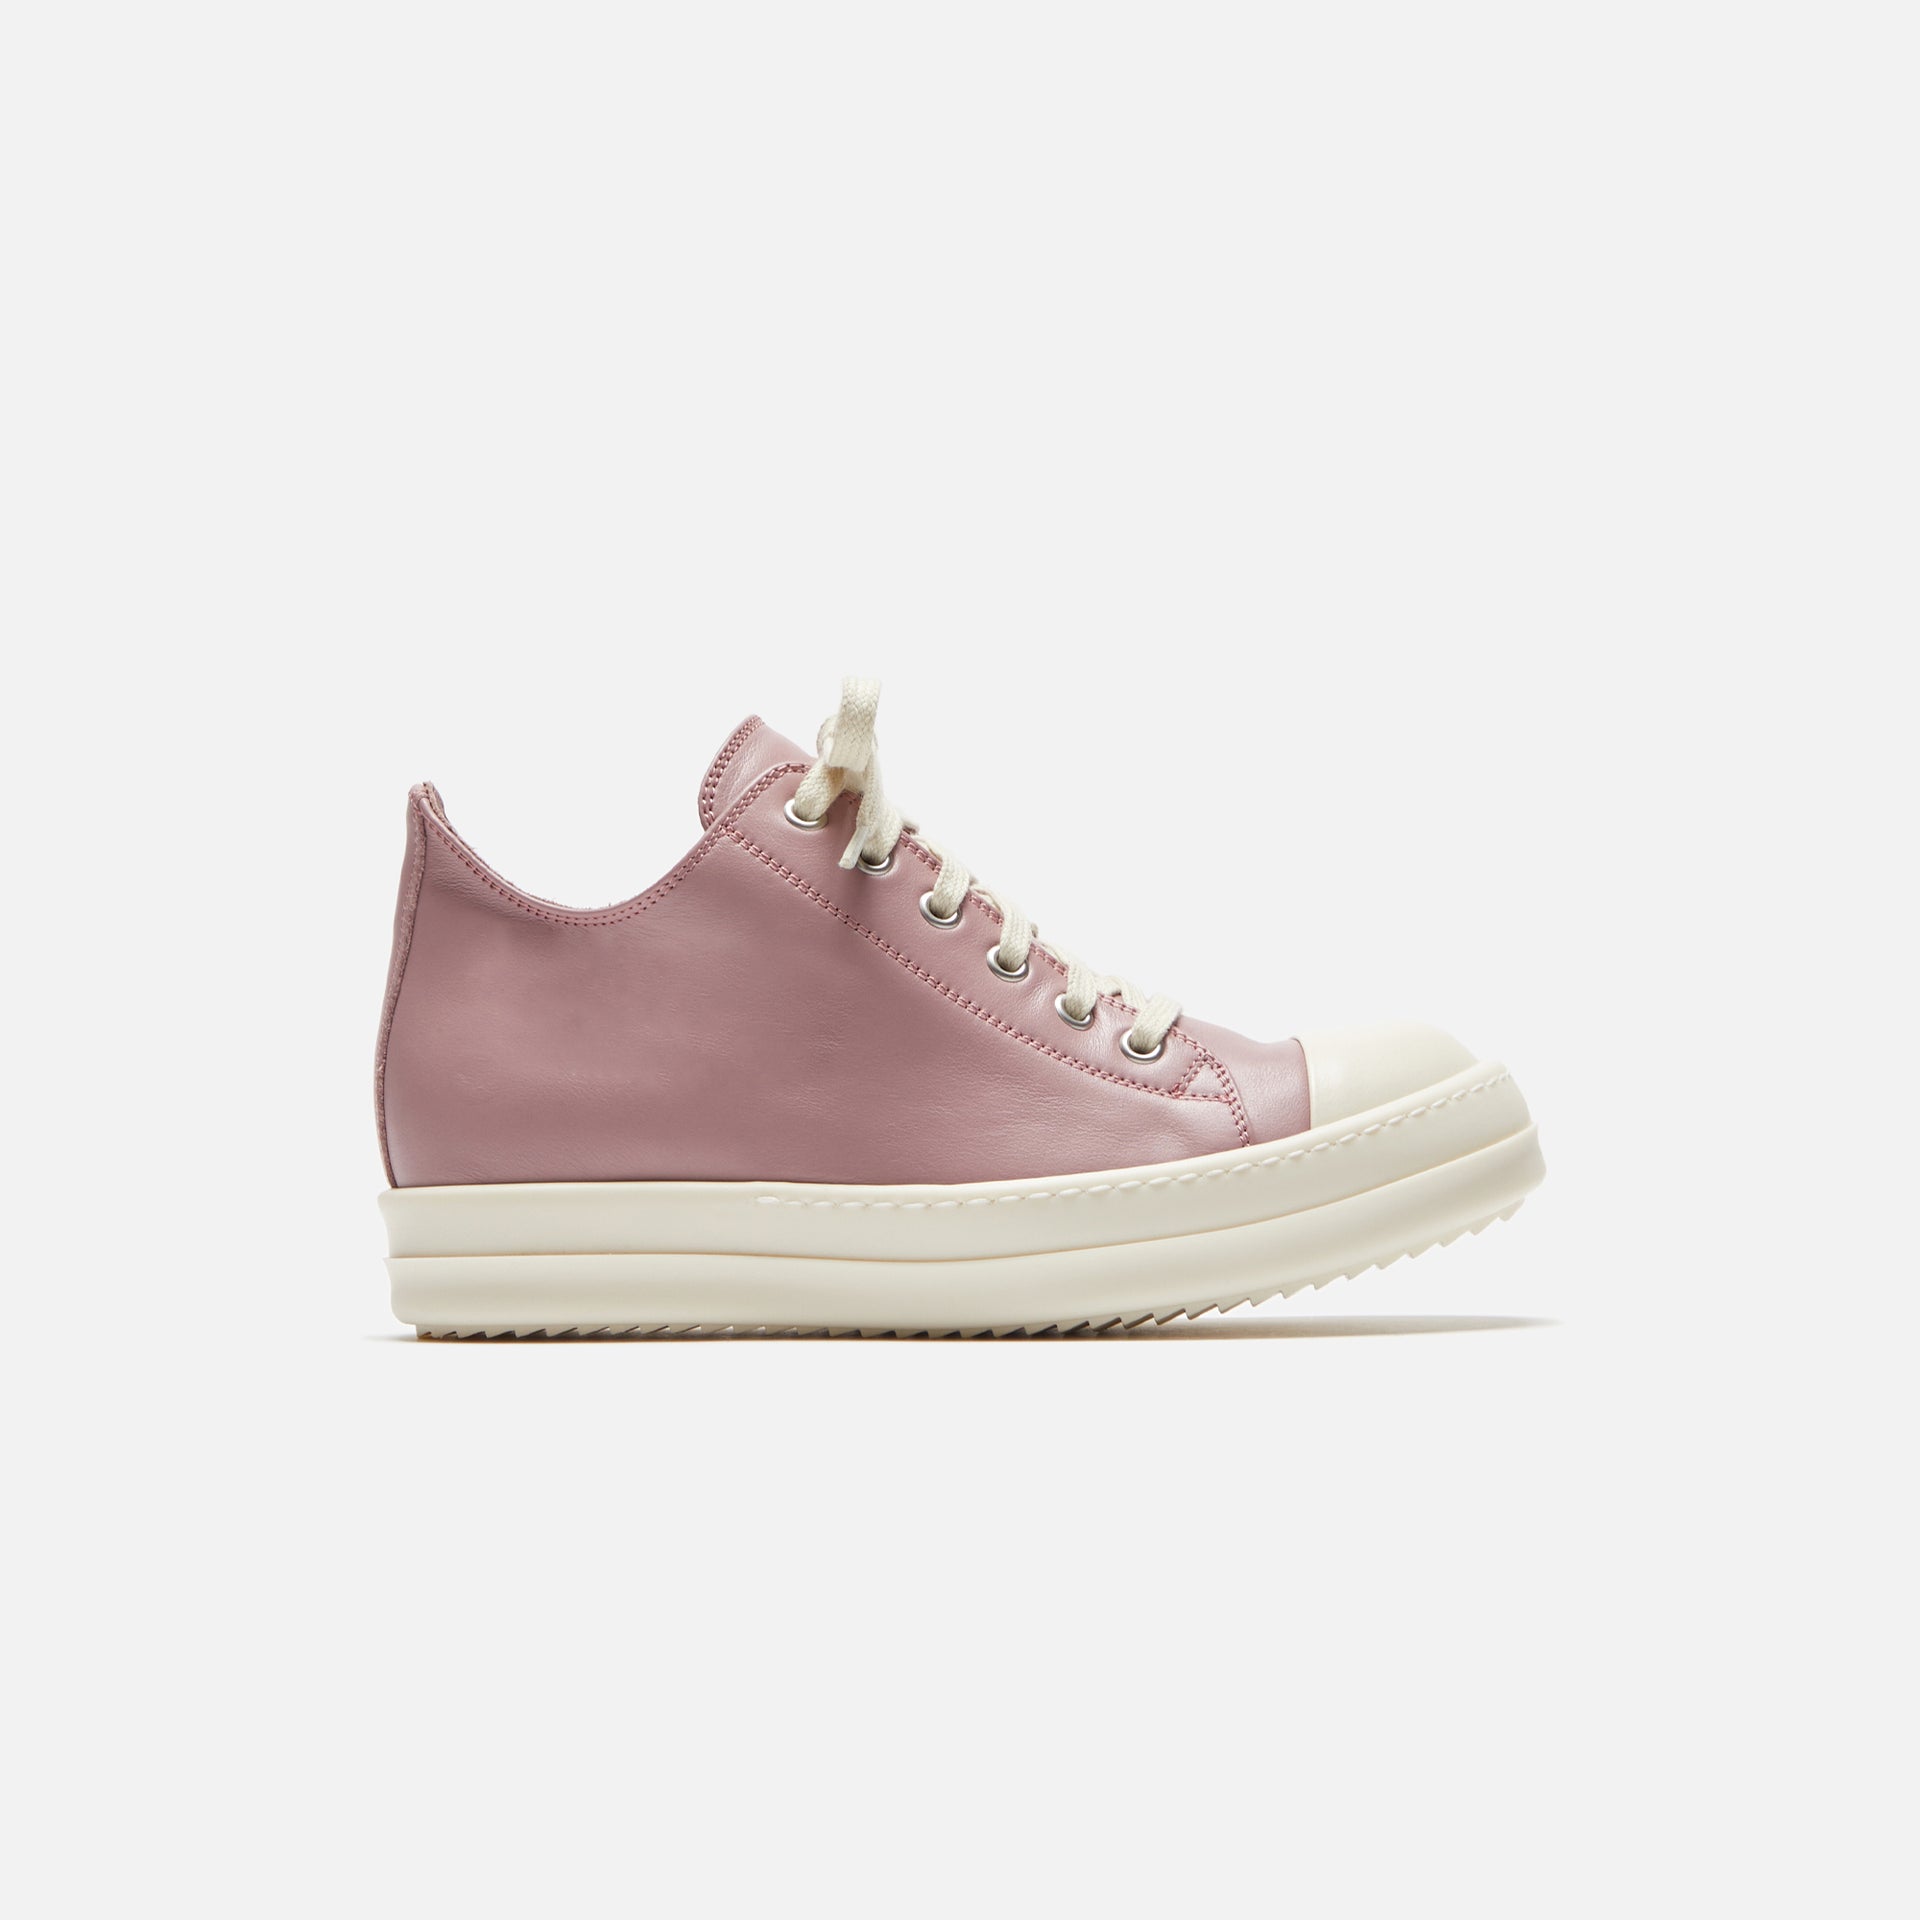 Rick Owens Low Top React Sneakers – Pink / Milk